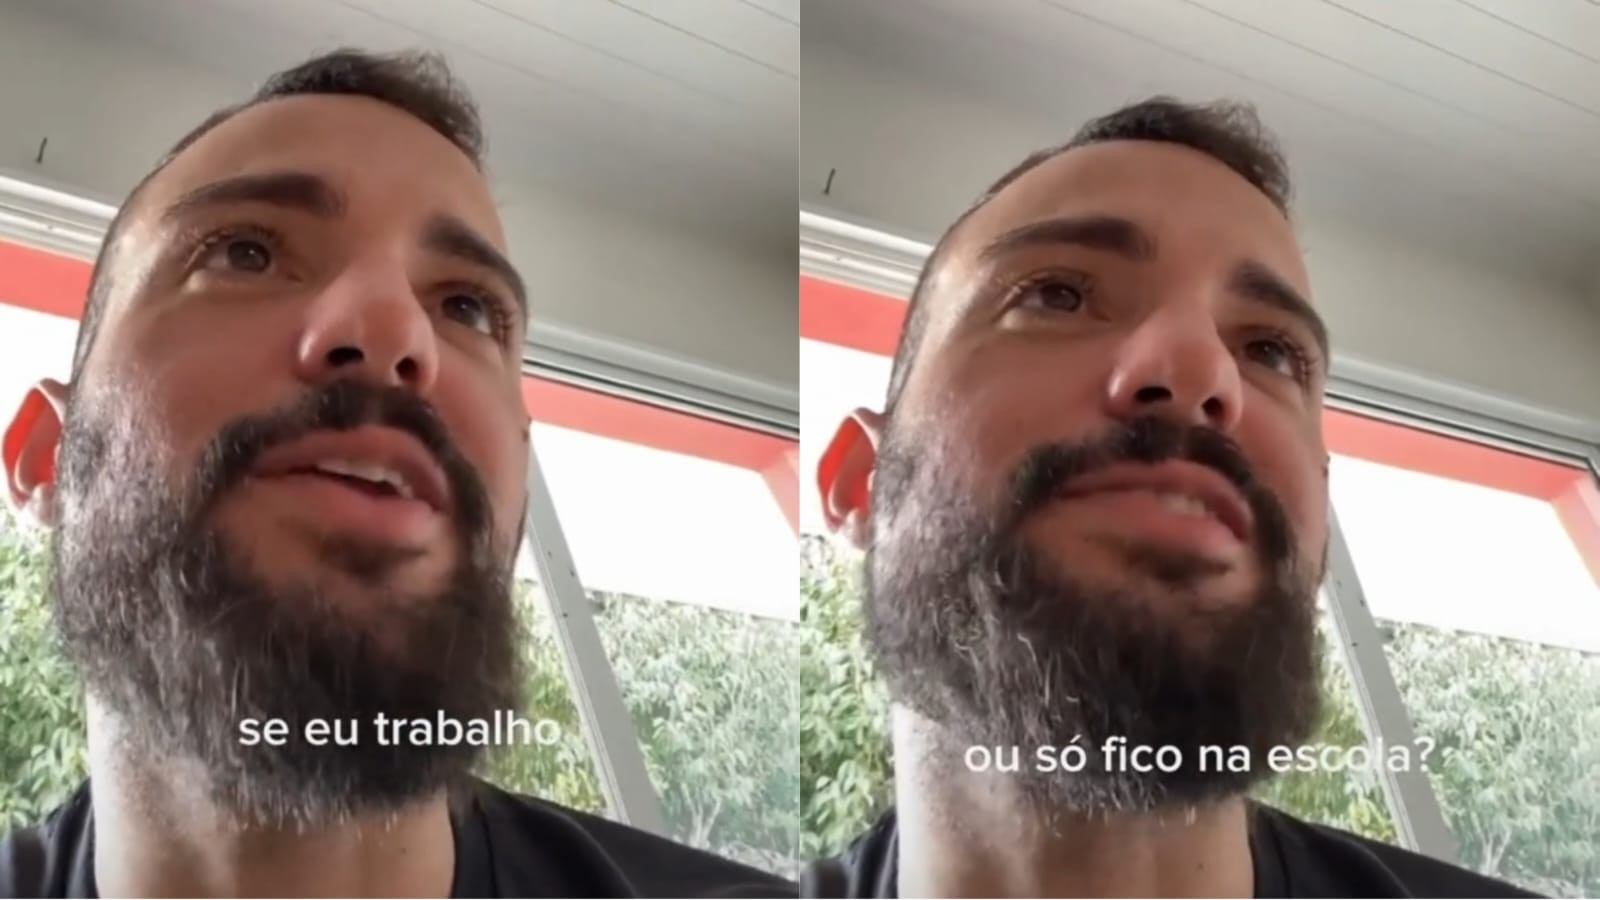 Professor infantil viraliza ao mostrar interações inusitadas com alunos em Fortaleza